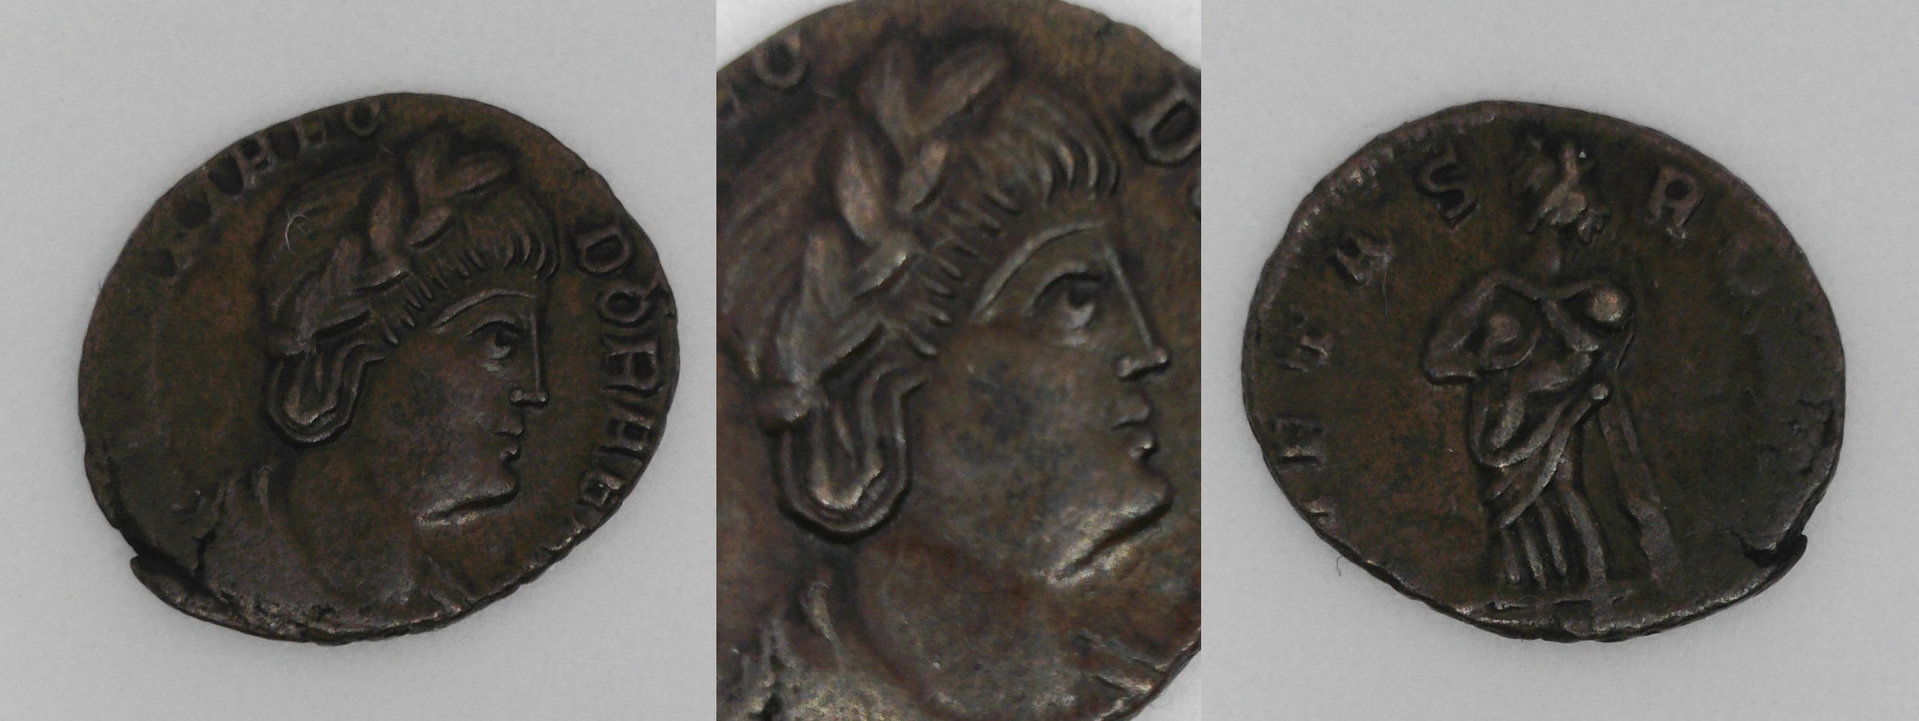 Theodora v2.jpg